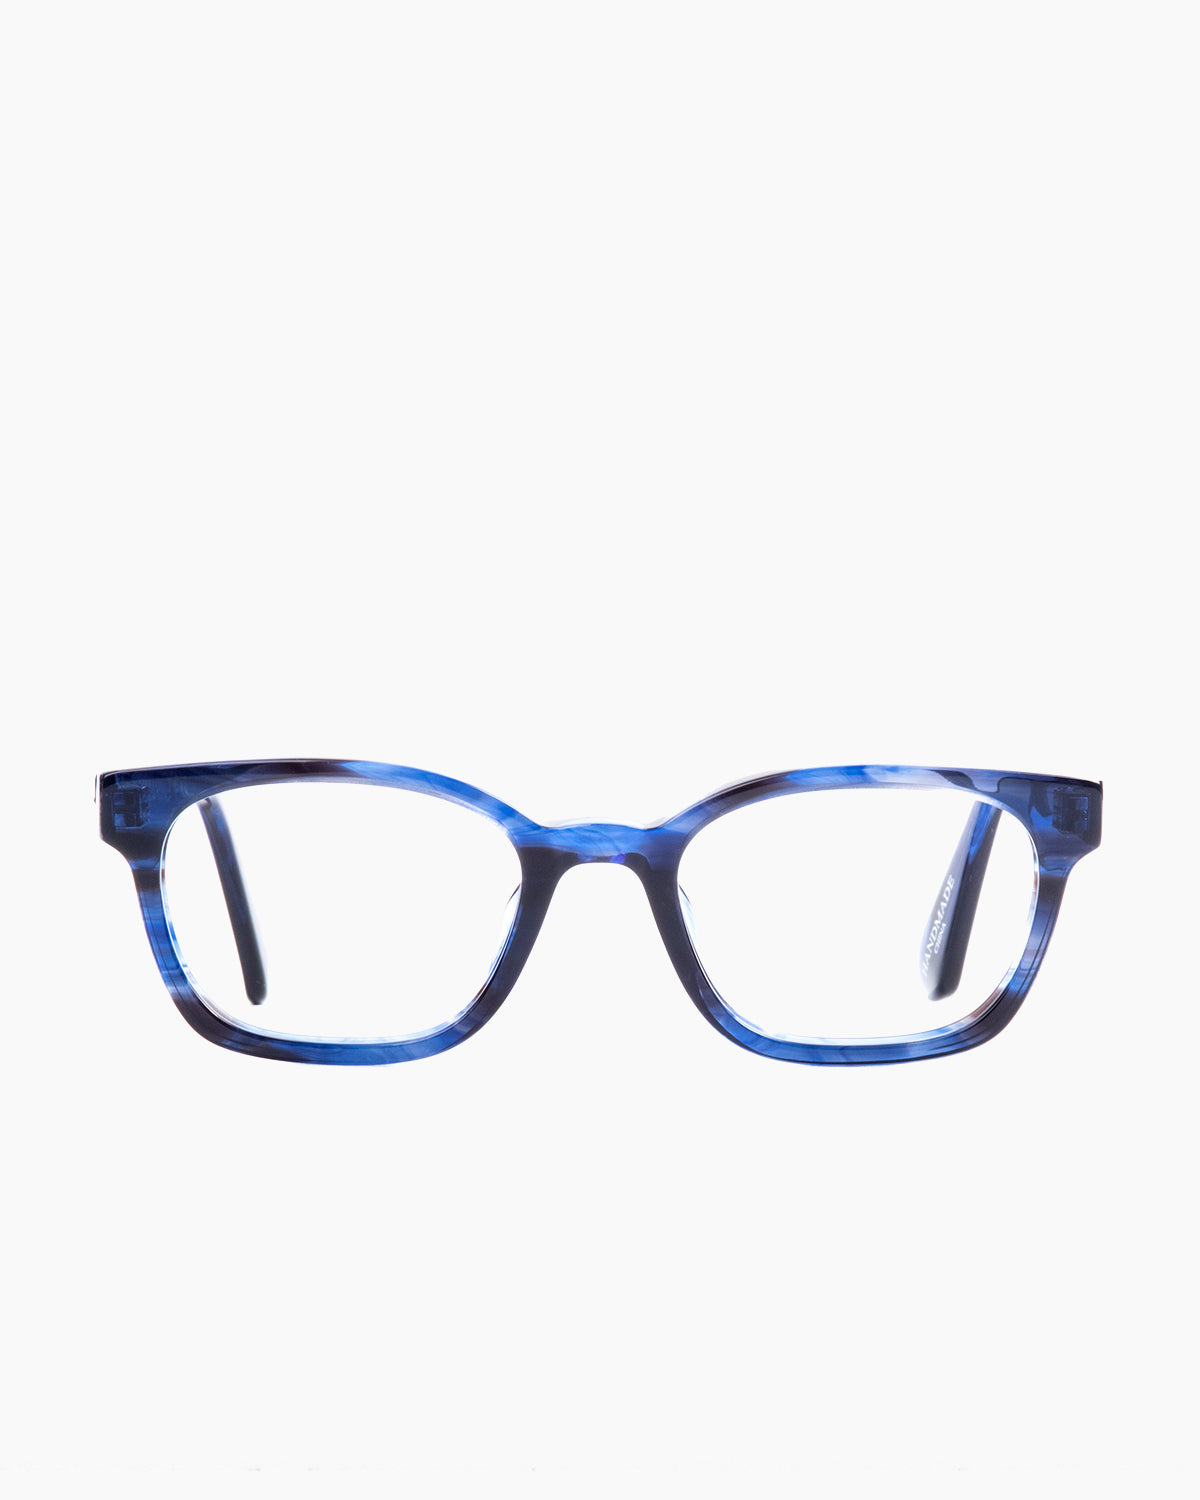 Evolve - Benz - 134 | Bar à lunettes:  Marie-Sophie Dion